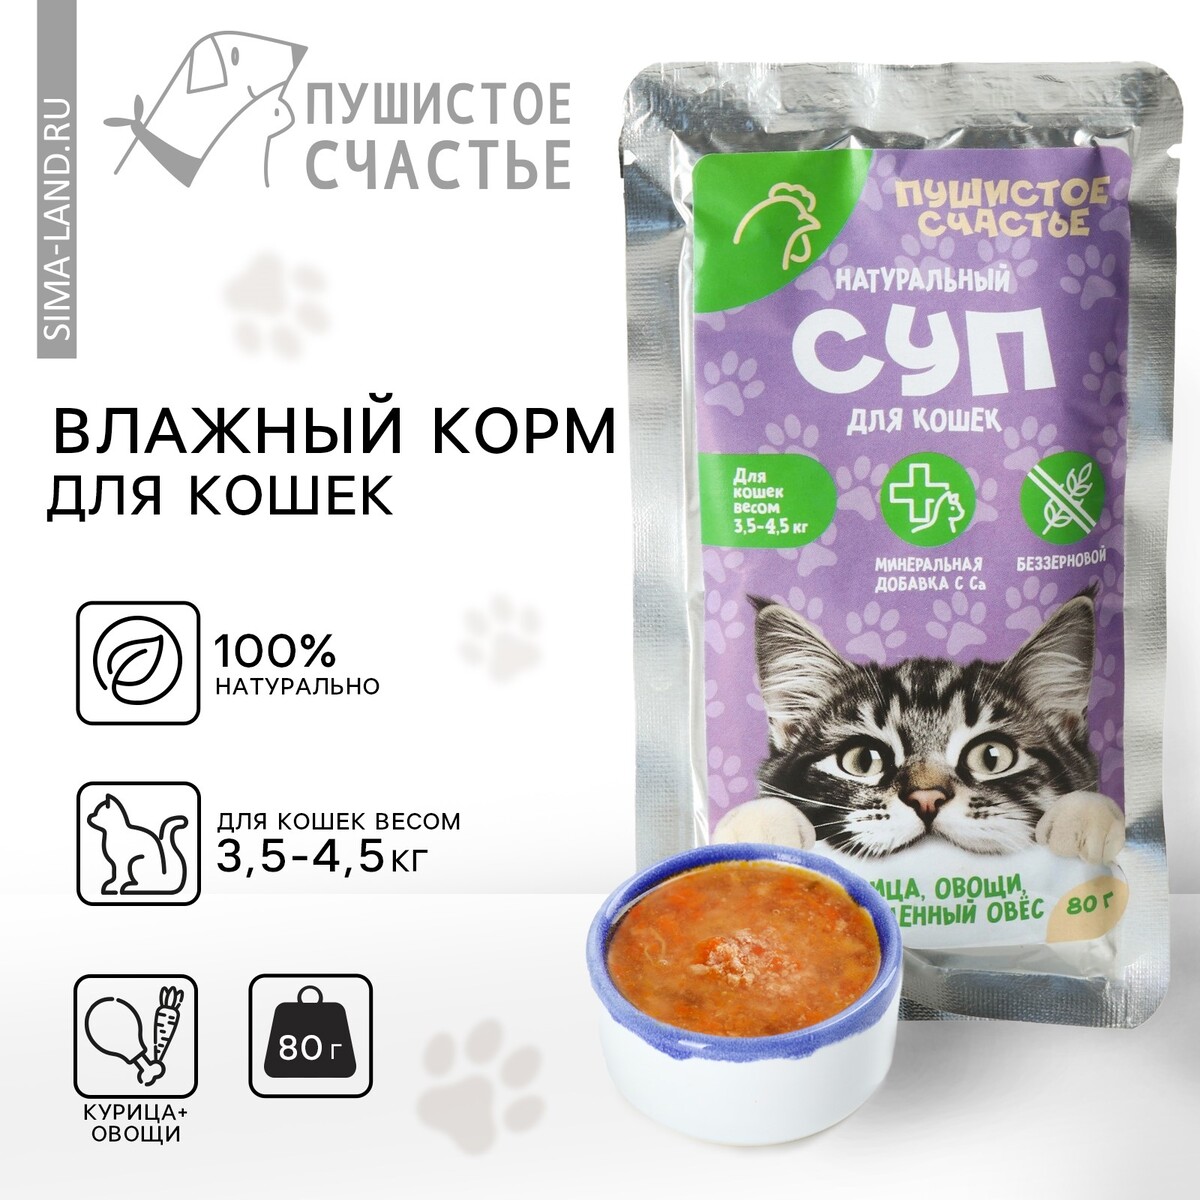 Влажный корм пушистое счастье беззерновой суп с курицей, овощами и овсом, для кошек, 80 г. болезни кошек